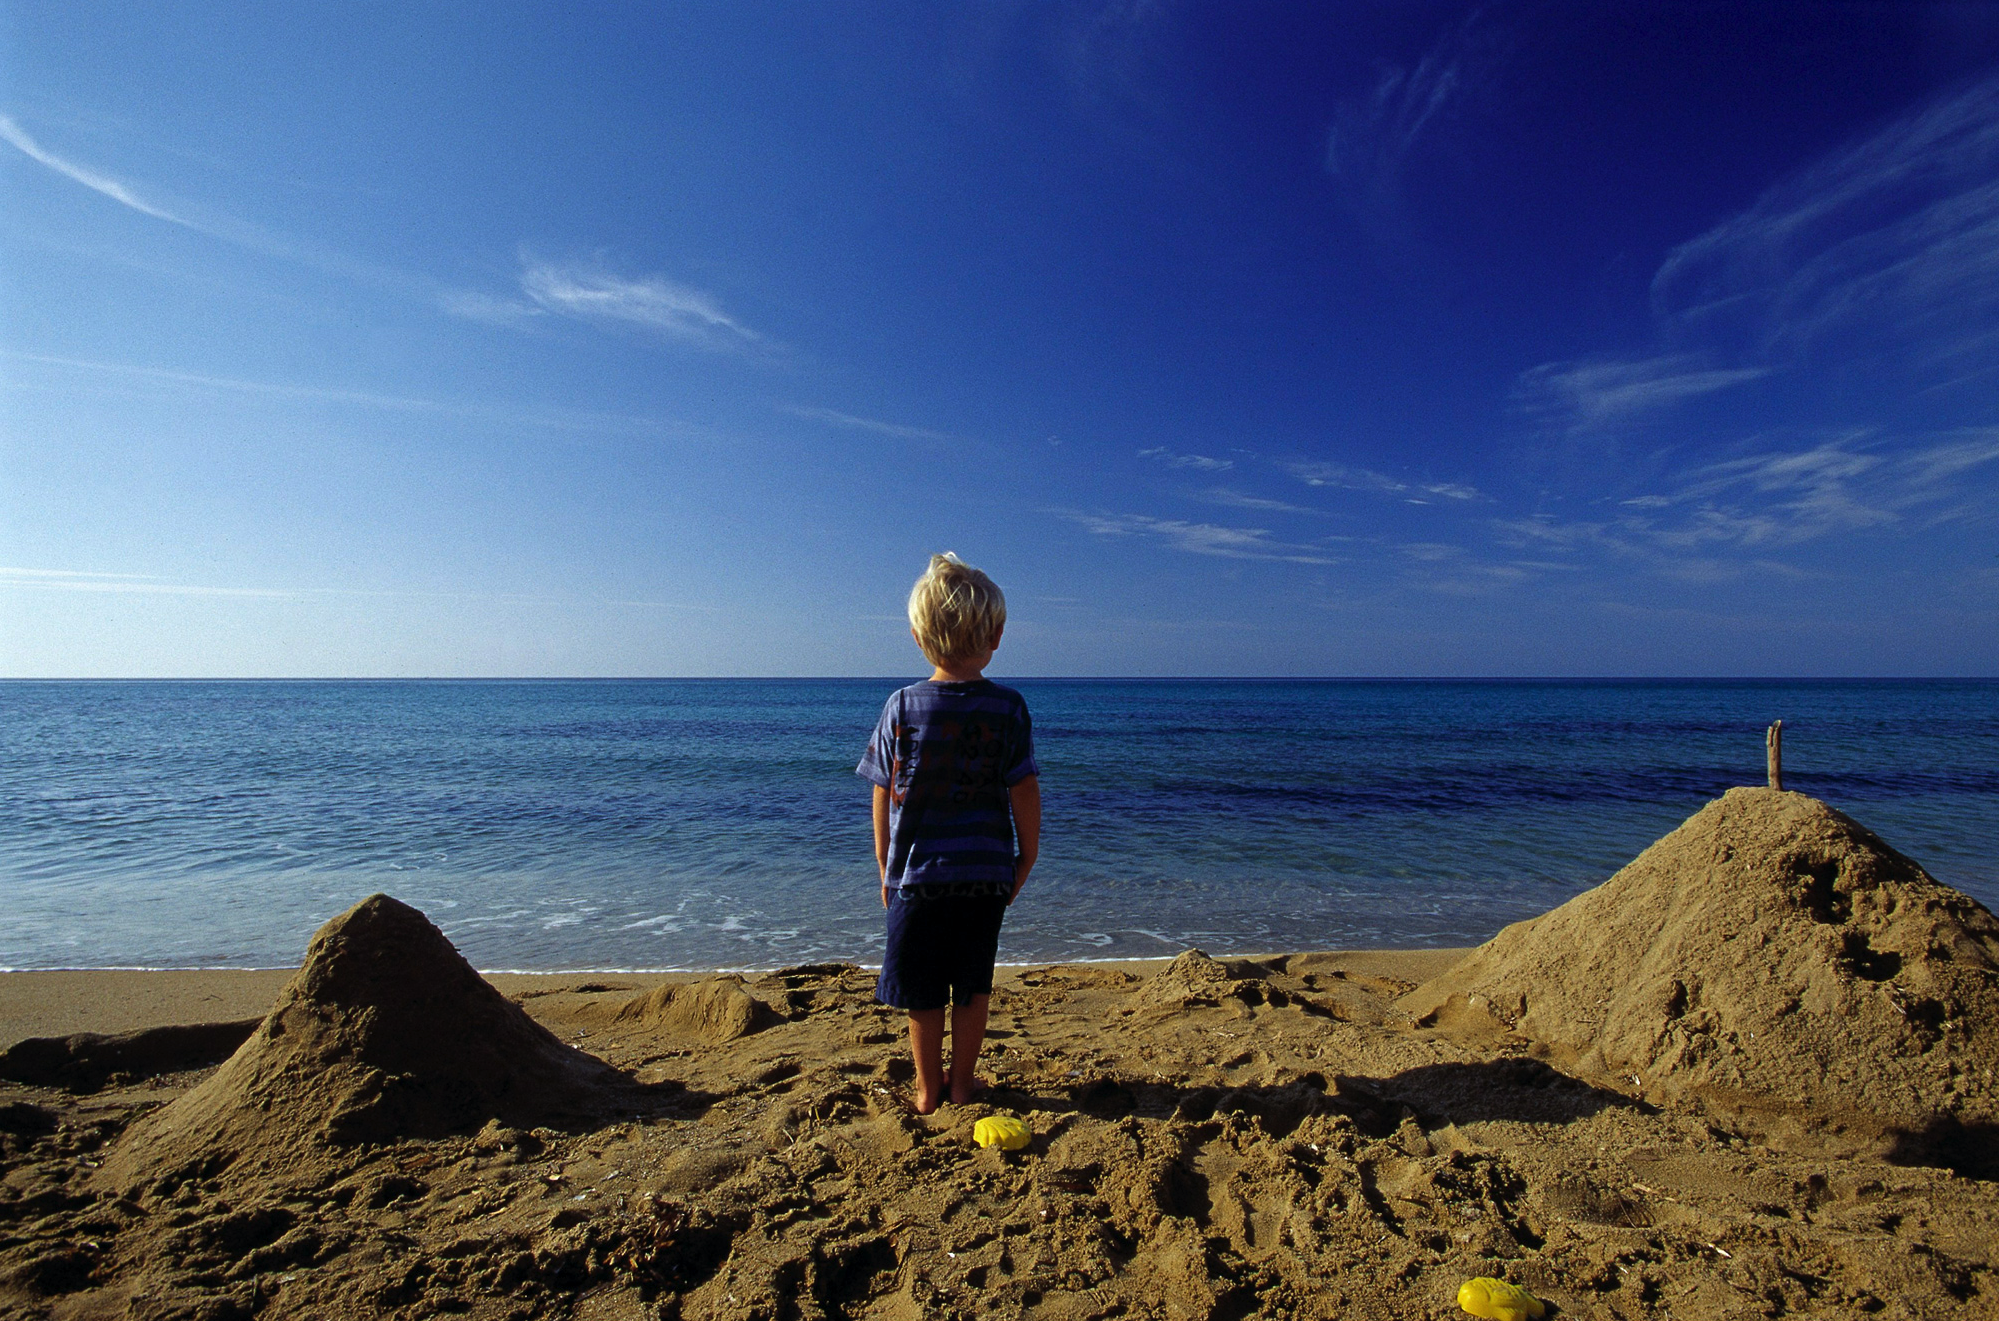 Jongetje tussen de zandkastelen op het strand kijkt naar de zee